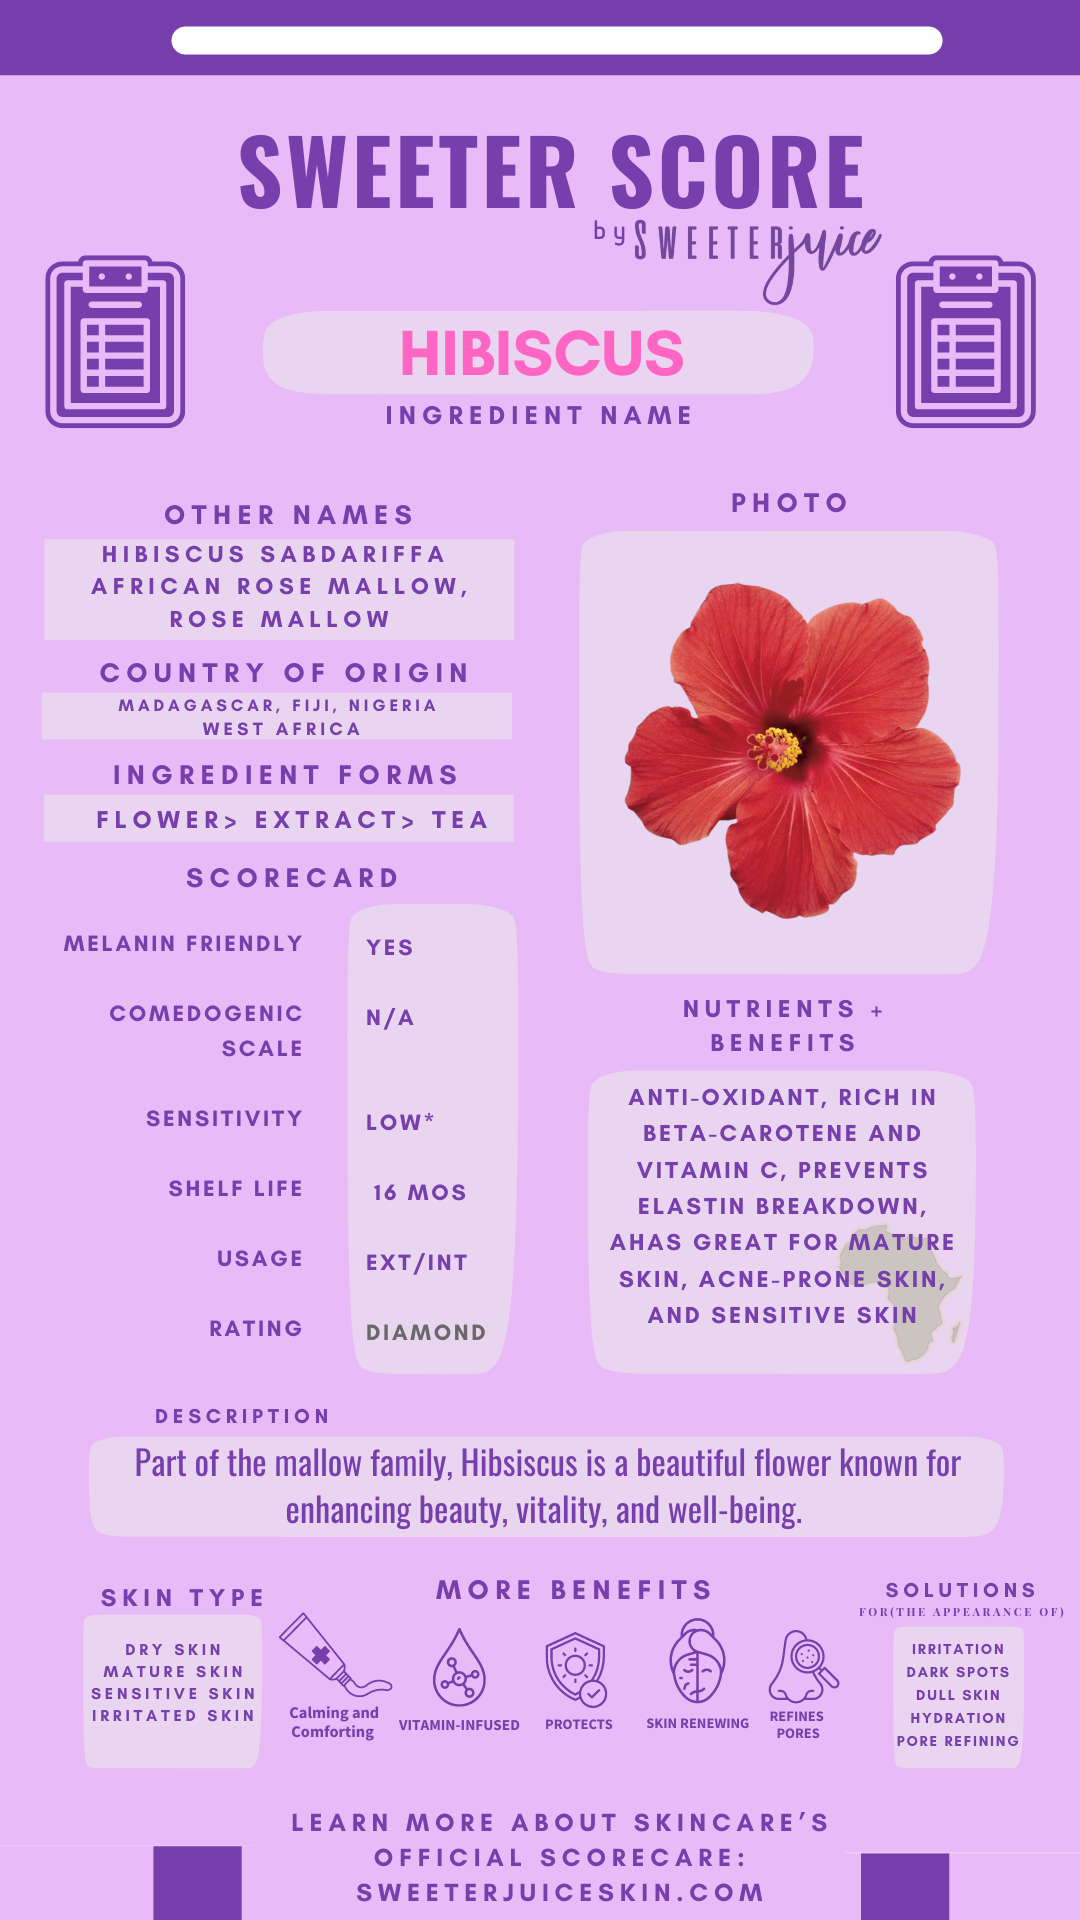 Amazing Health Benefits Of Hibiscus